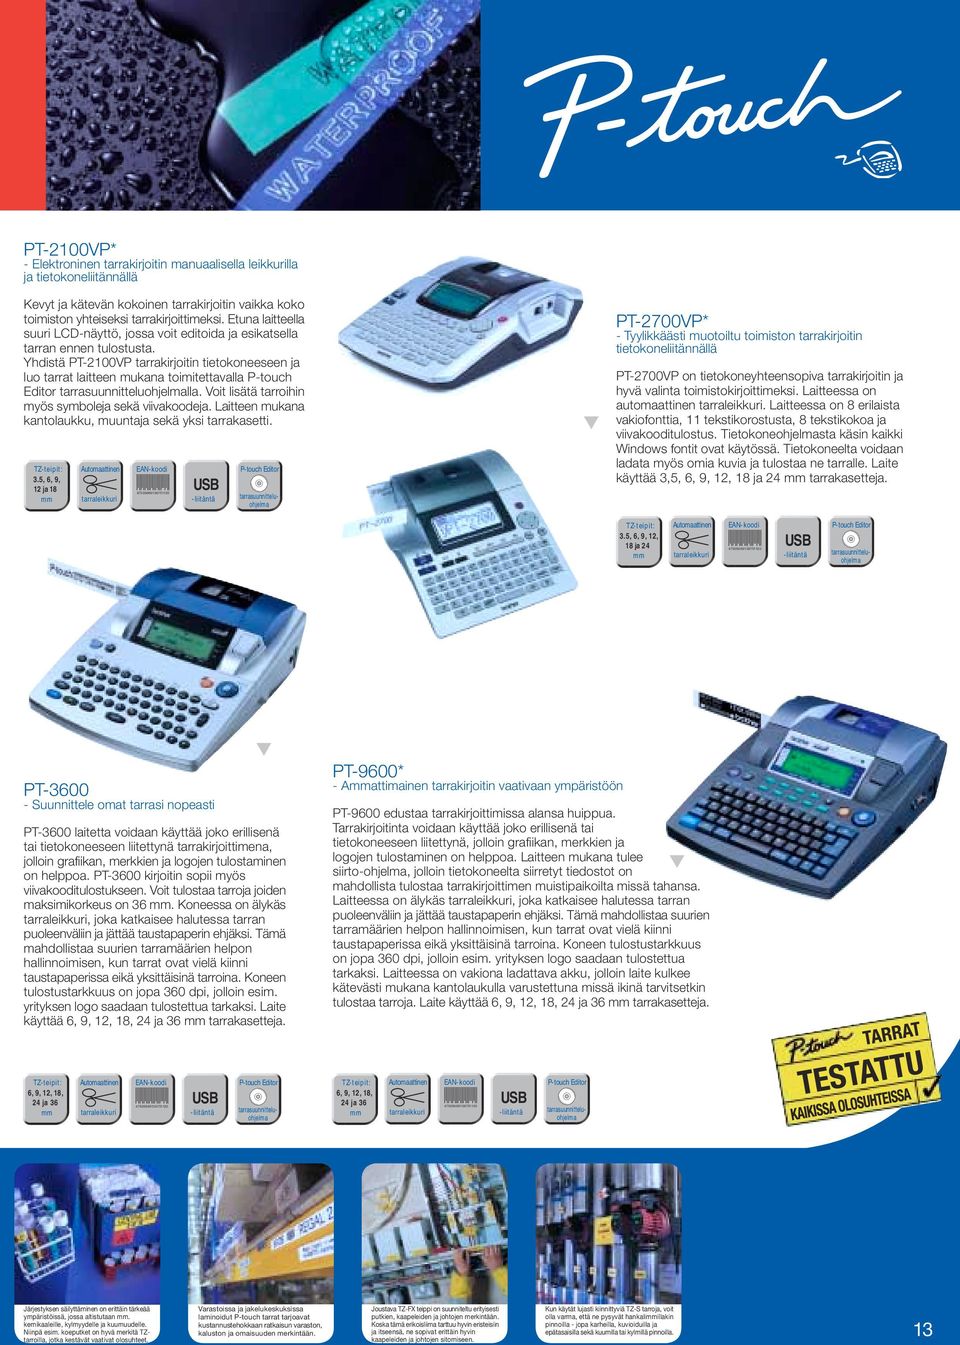 Yhdistä PT-2100VP tarrakirjoitin tietokoneeseen ja luo tarrat laitteen mukana toimitettavalla P-touch Editor tarrasuunnitteluohjelmalla. Voit lisätä tarroihin myös symboleja sekä viivakoodeja.